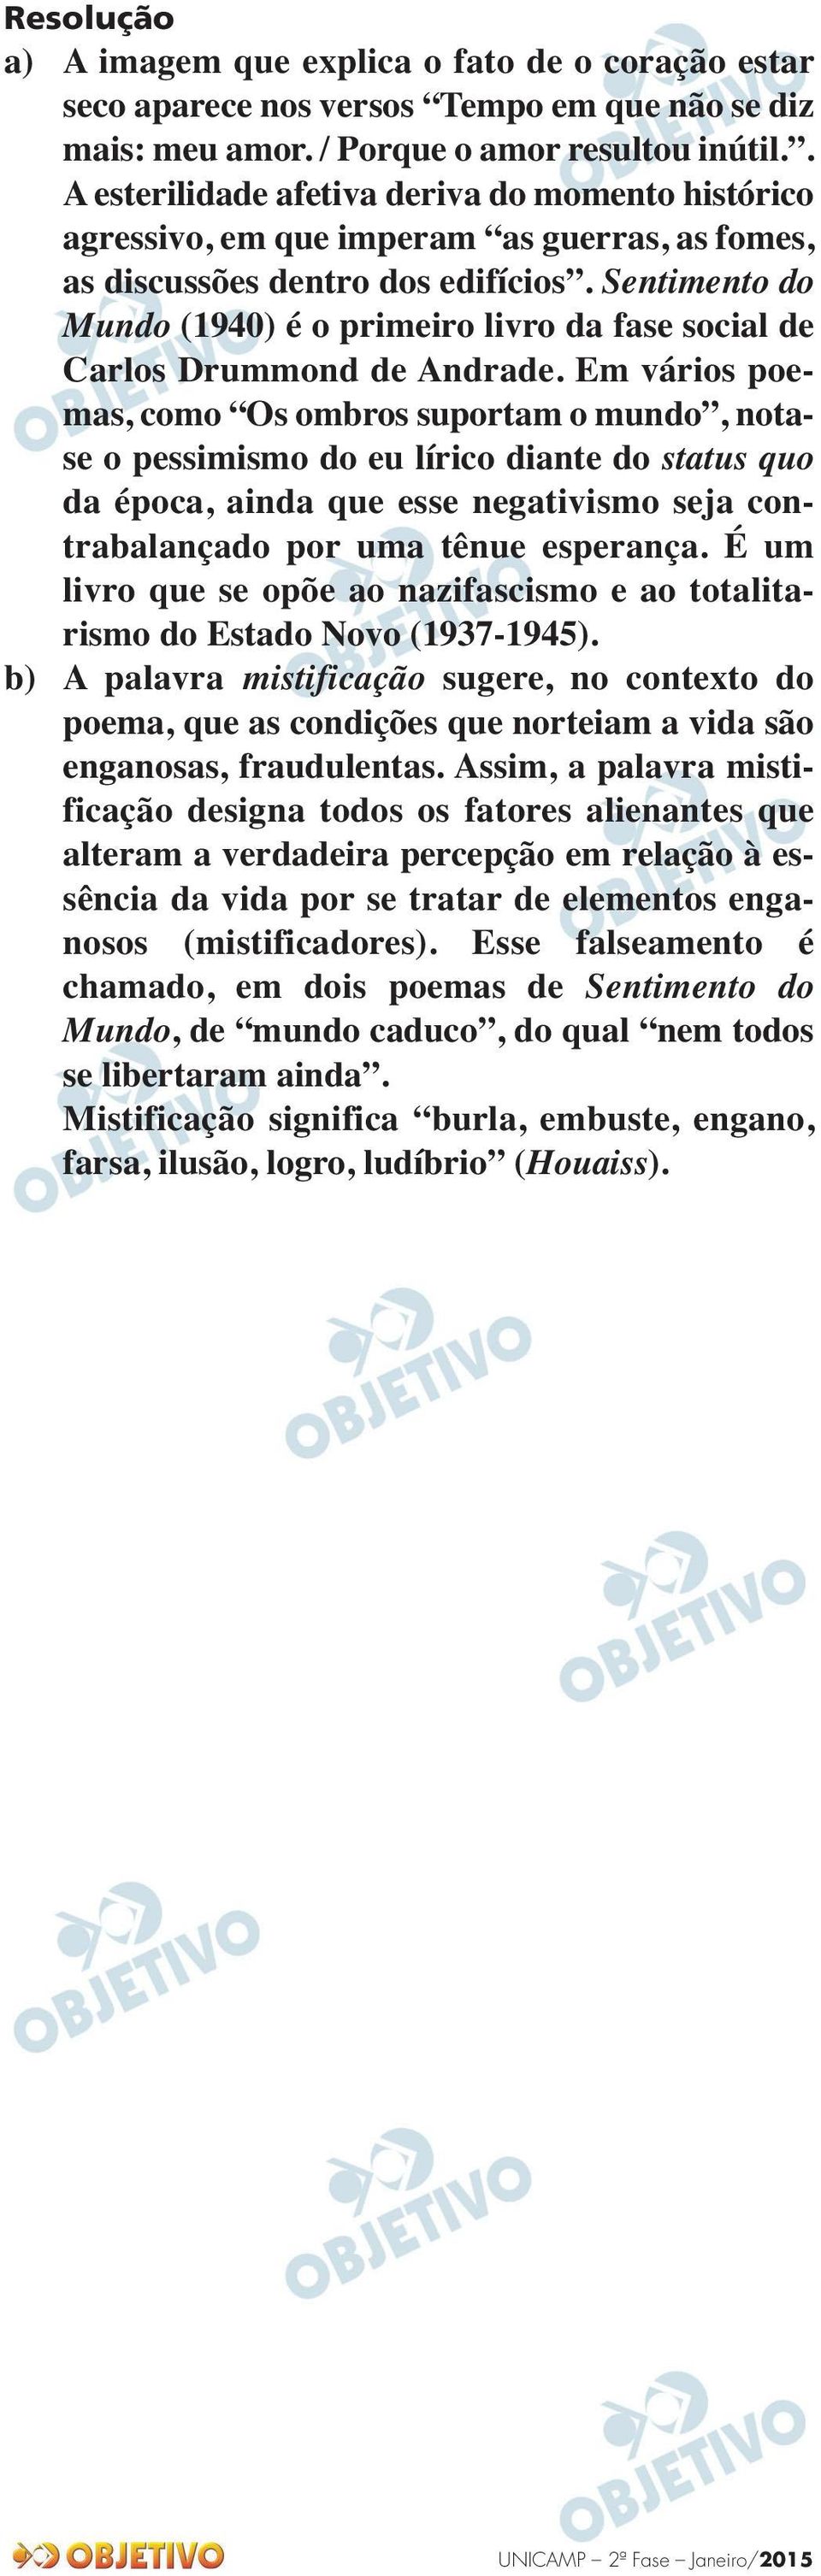 Sentimento do Mundo (1940) é o primeiro livro da fase social de Carlos Drummond de Andrade.